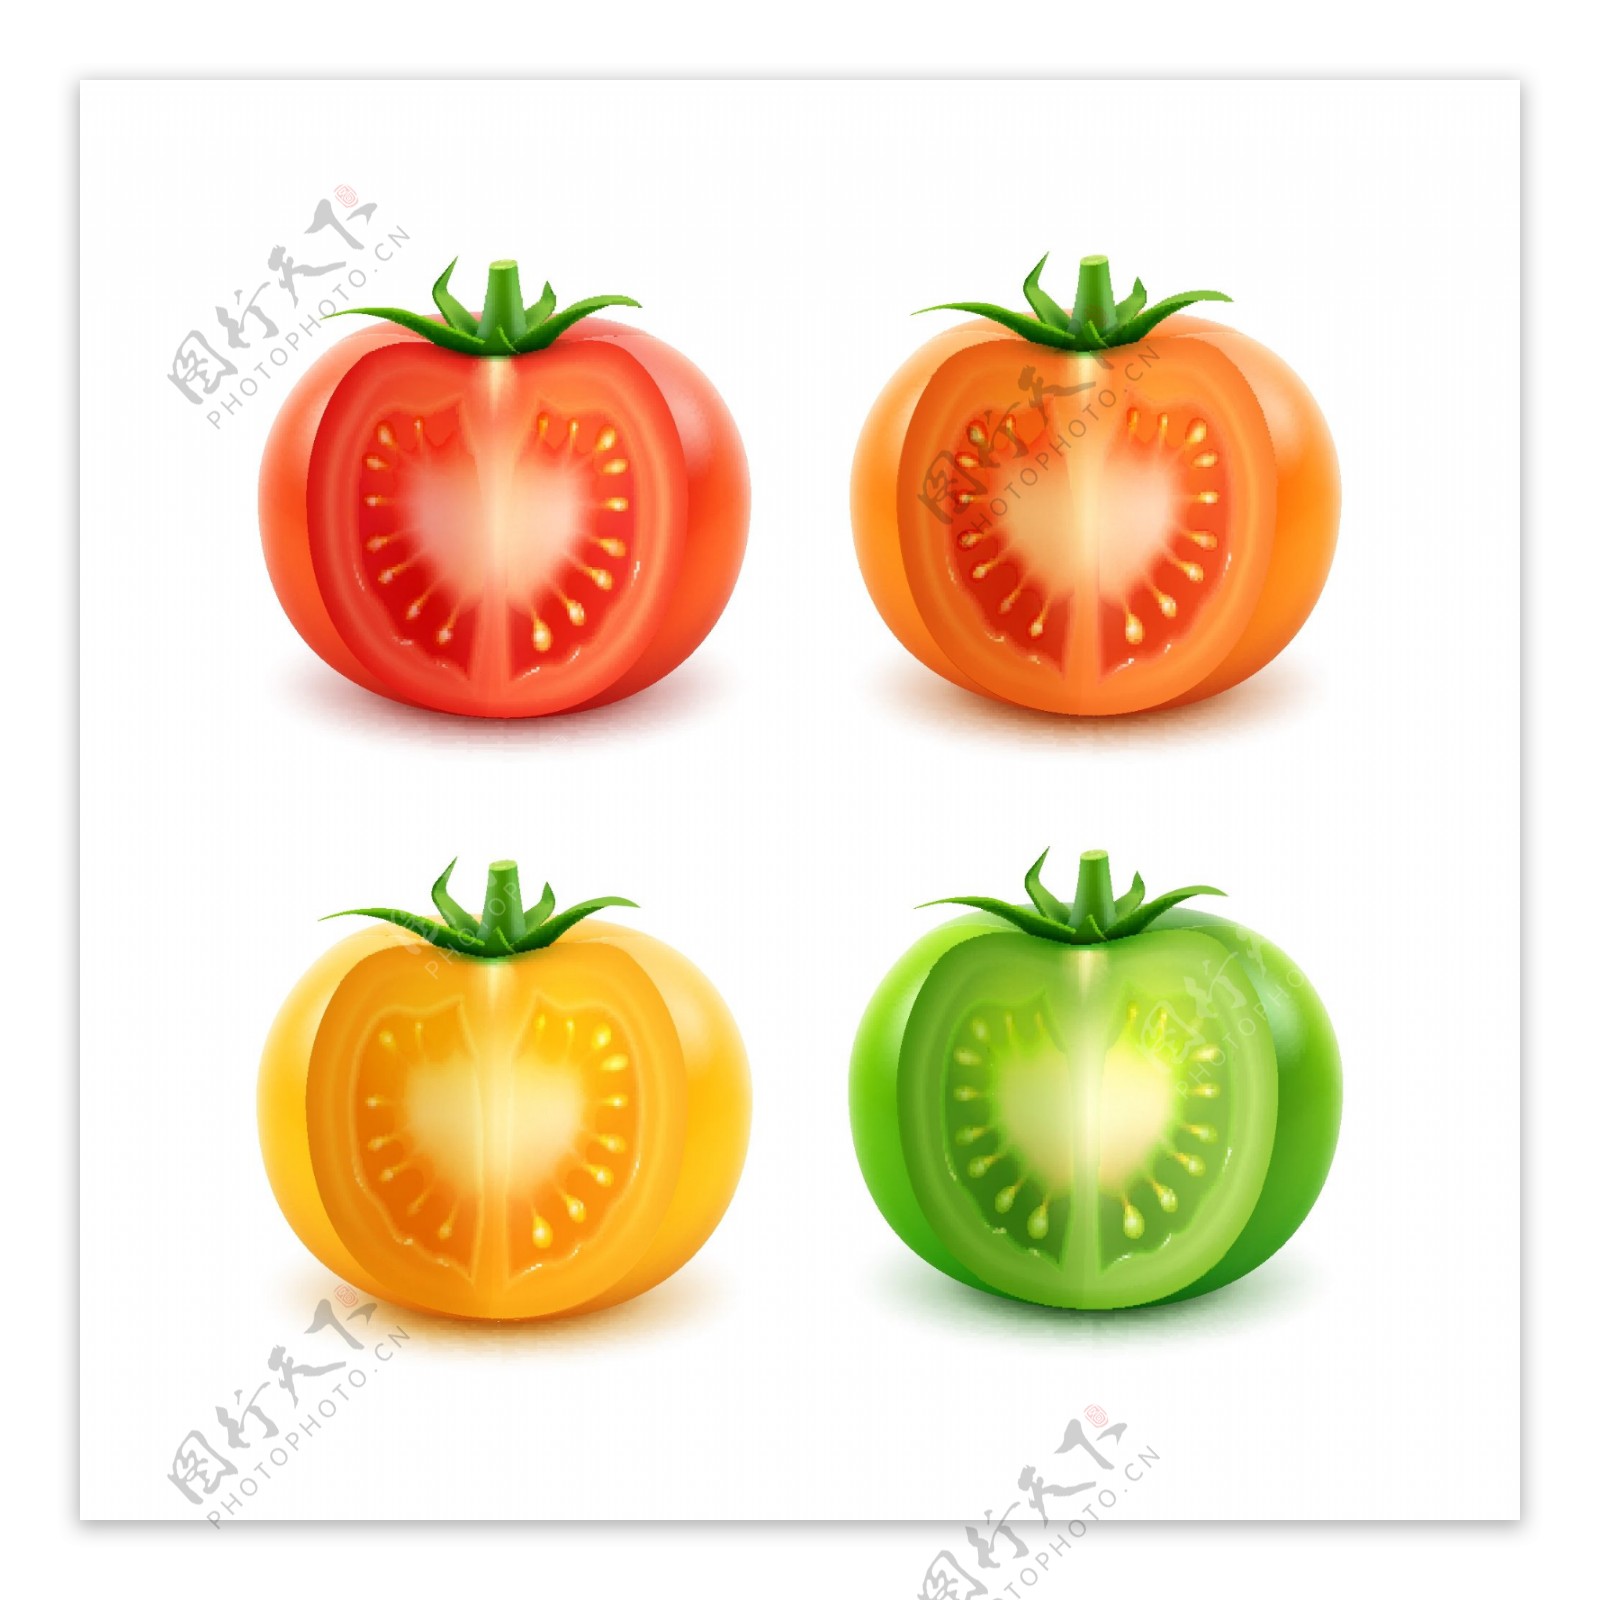 不同颜色的西红柿